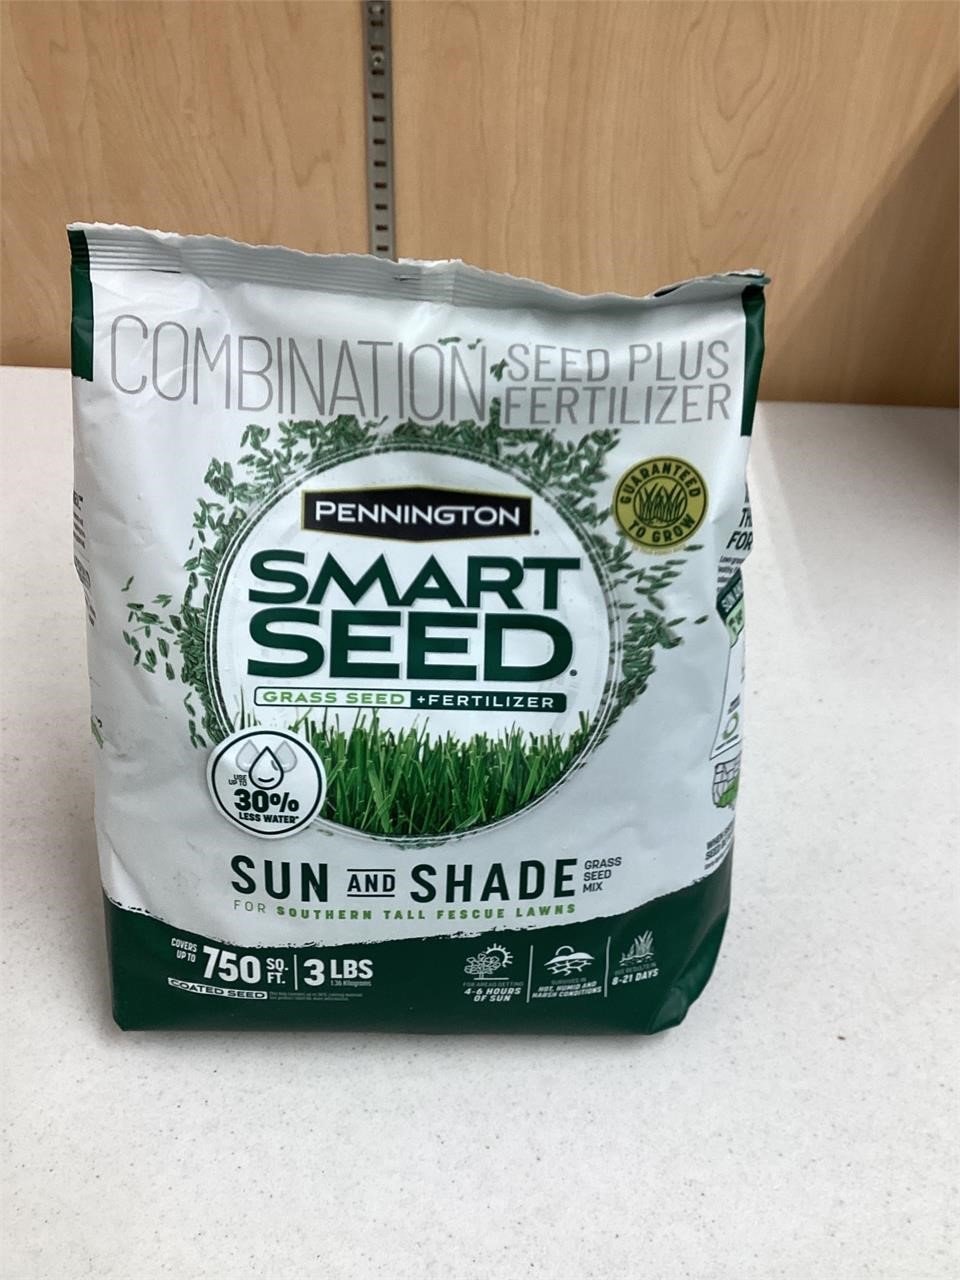 Pennington smart seed grass seed fertilizer